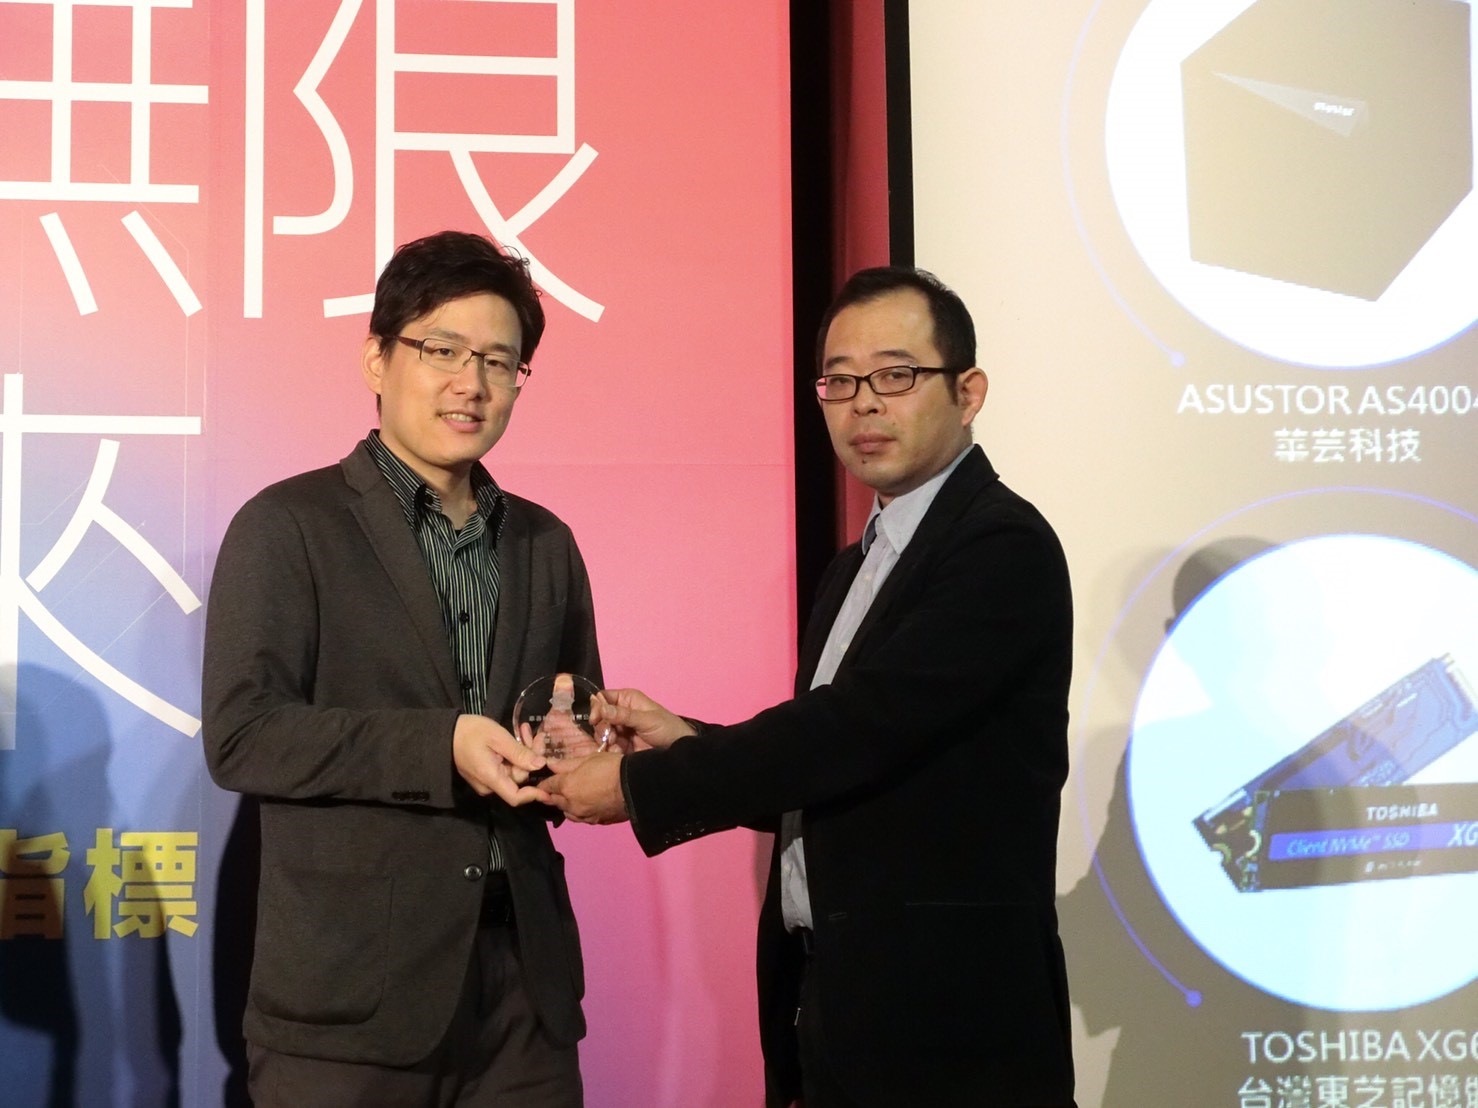 華芸科技 AS4004T獲頒第十一屆2018 年科技趨勢金奬NAS/儲存裝置類「傑出科技金奬」殊榮